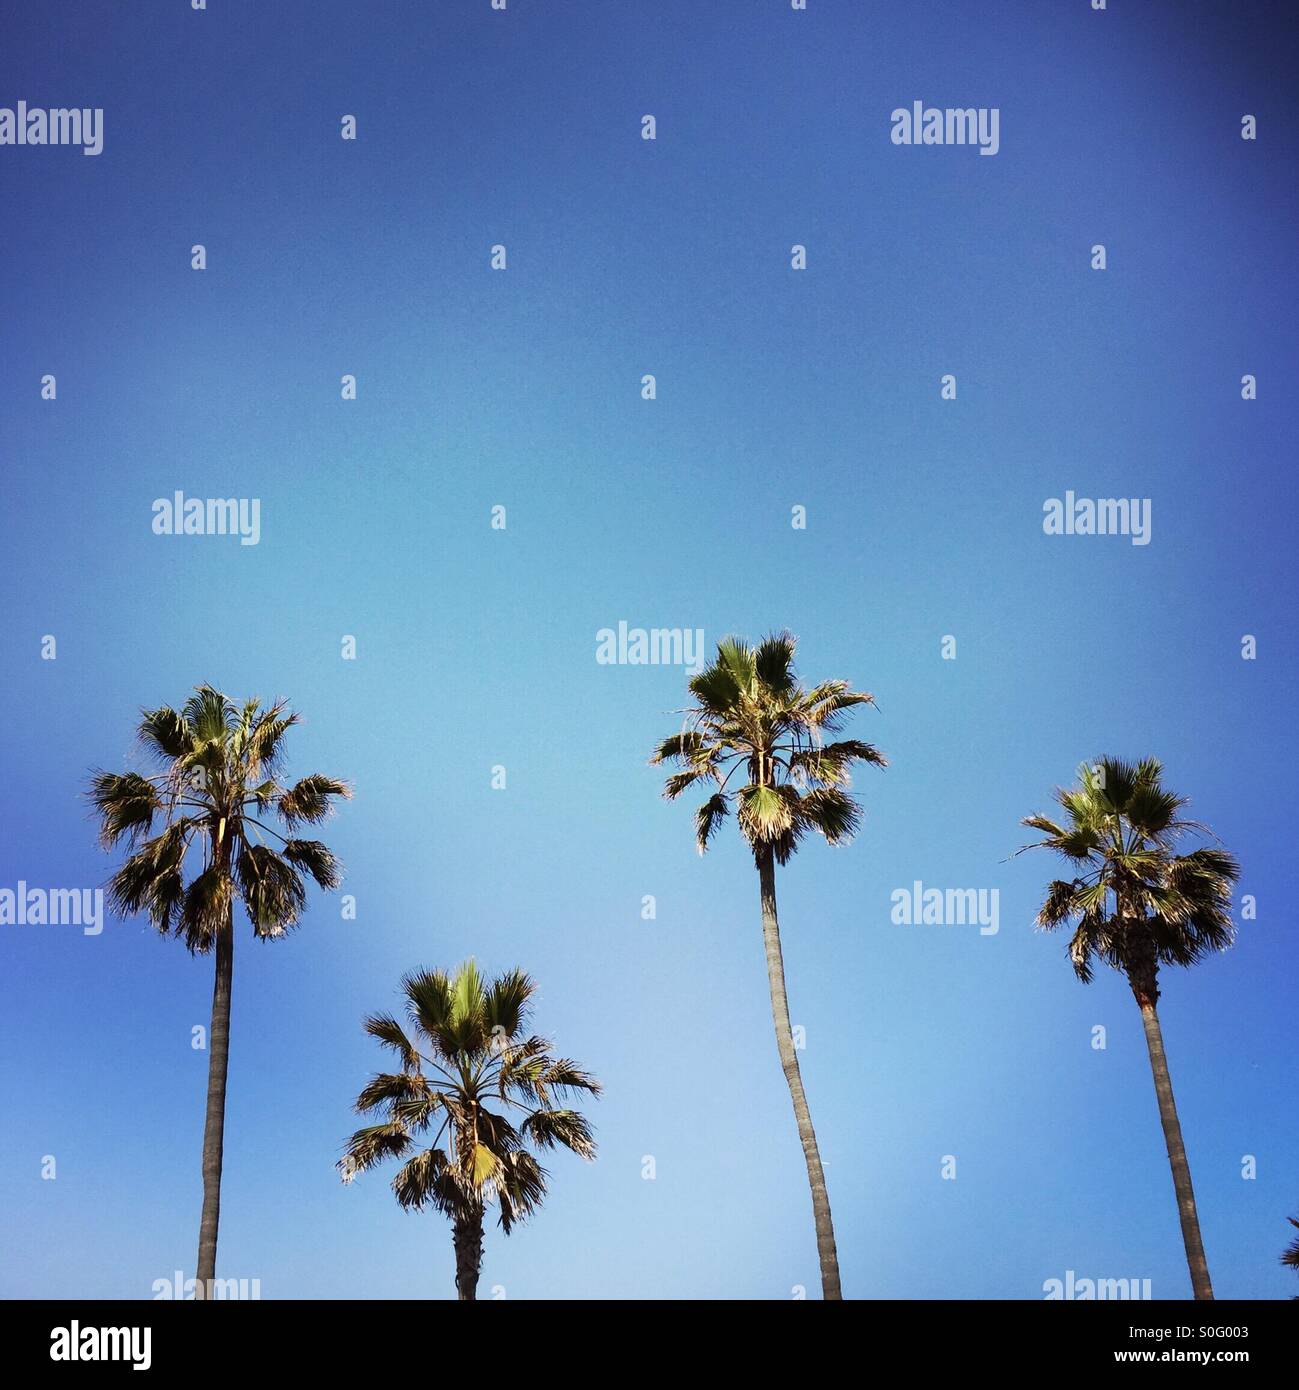 Four Palm trees in a row. Manhattan beach, California USA. Stock Photo